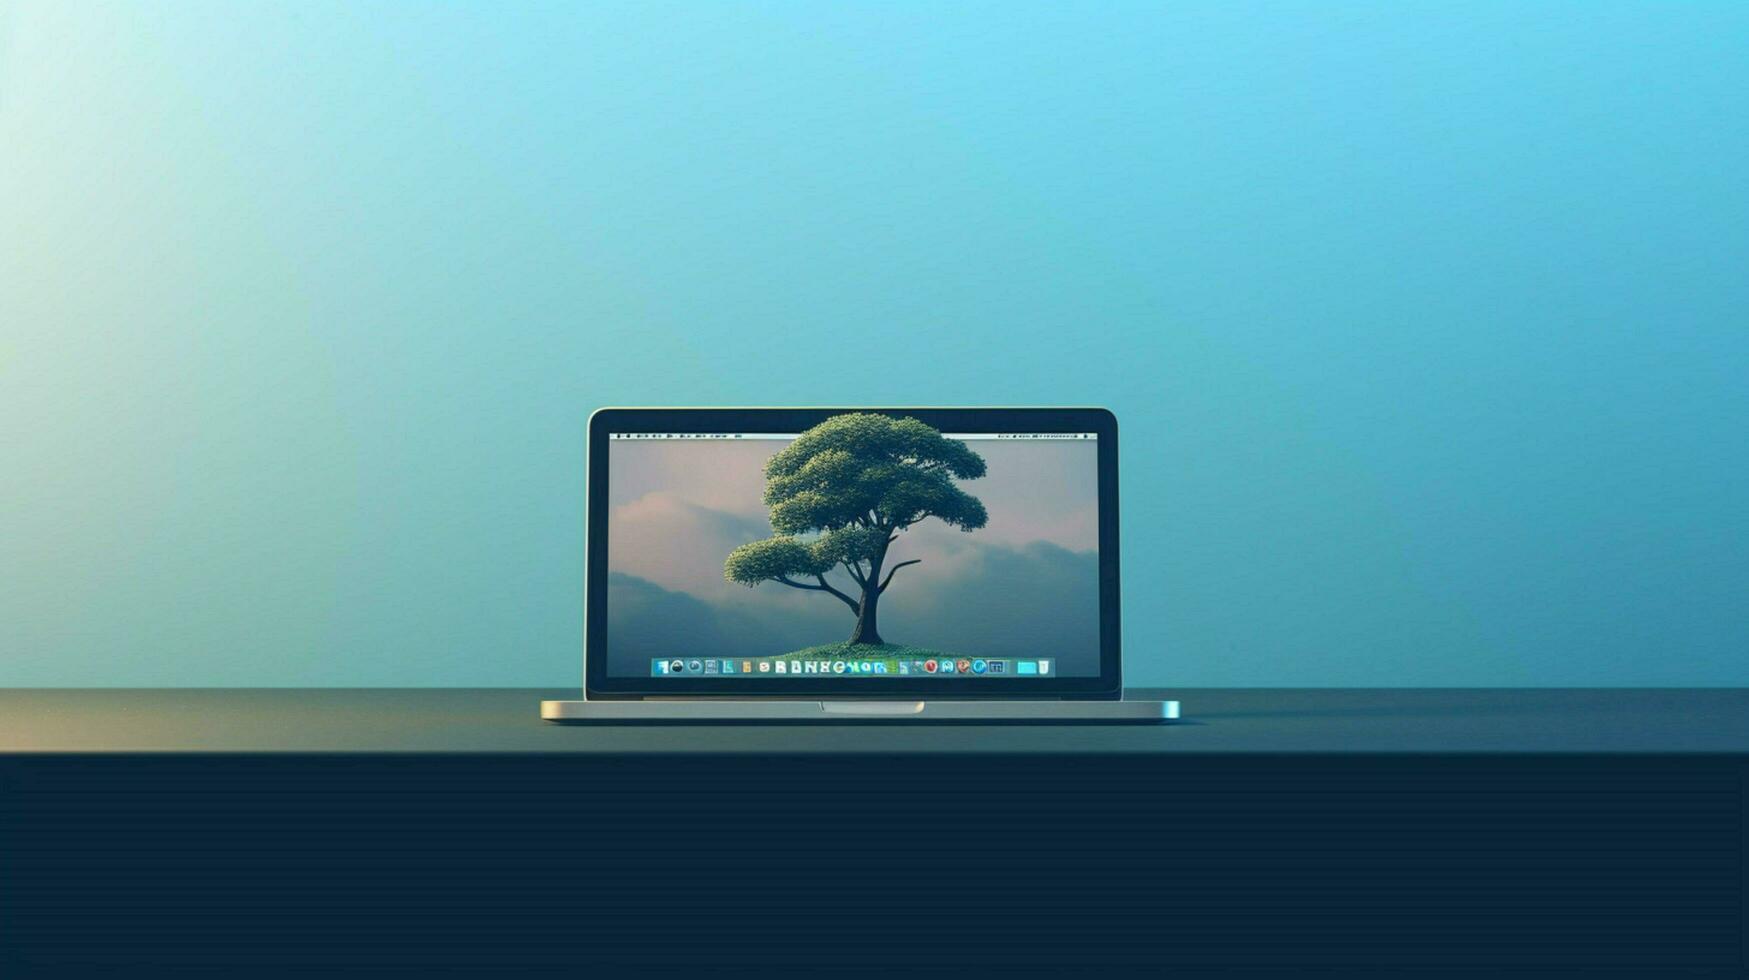 minimalista macbook fondo de pantalla alto calidad foto